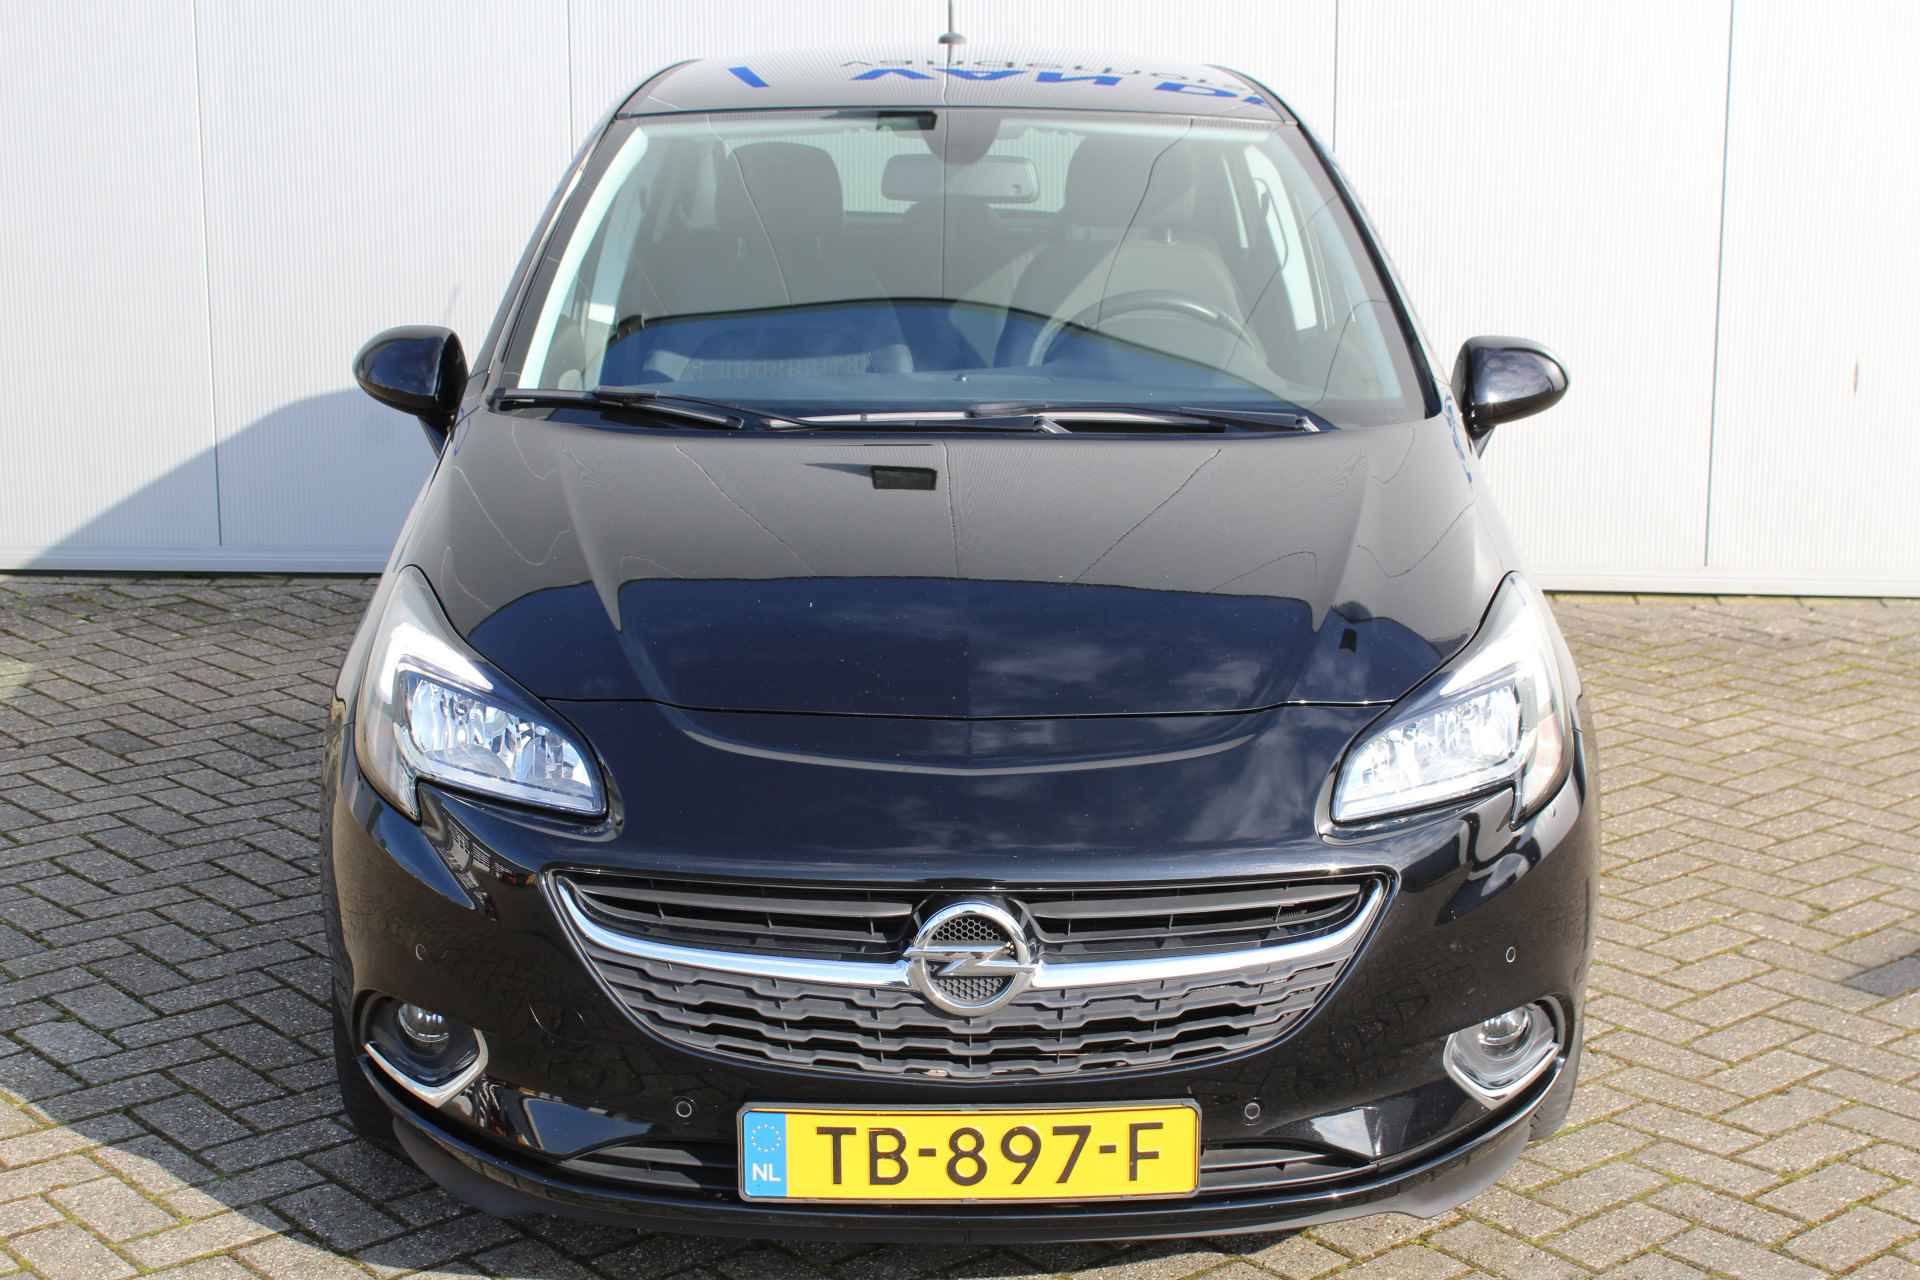 Opel Corsa 1.0-90pk Turbo 'Online Edition'. Erg nette en goed onderhouden Opel Corsa 1.0-90pk Turbo 5drs.. Volautm. airco, cruise control, navigatie, trekhaak afneembare kogel, metallic lak, parkeersensoren v+a, LM wielen, telefoonvoorb., 5 deuren etc. - 4/45